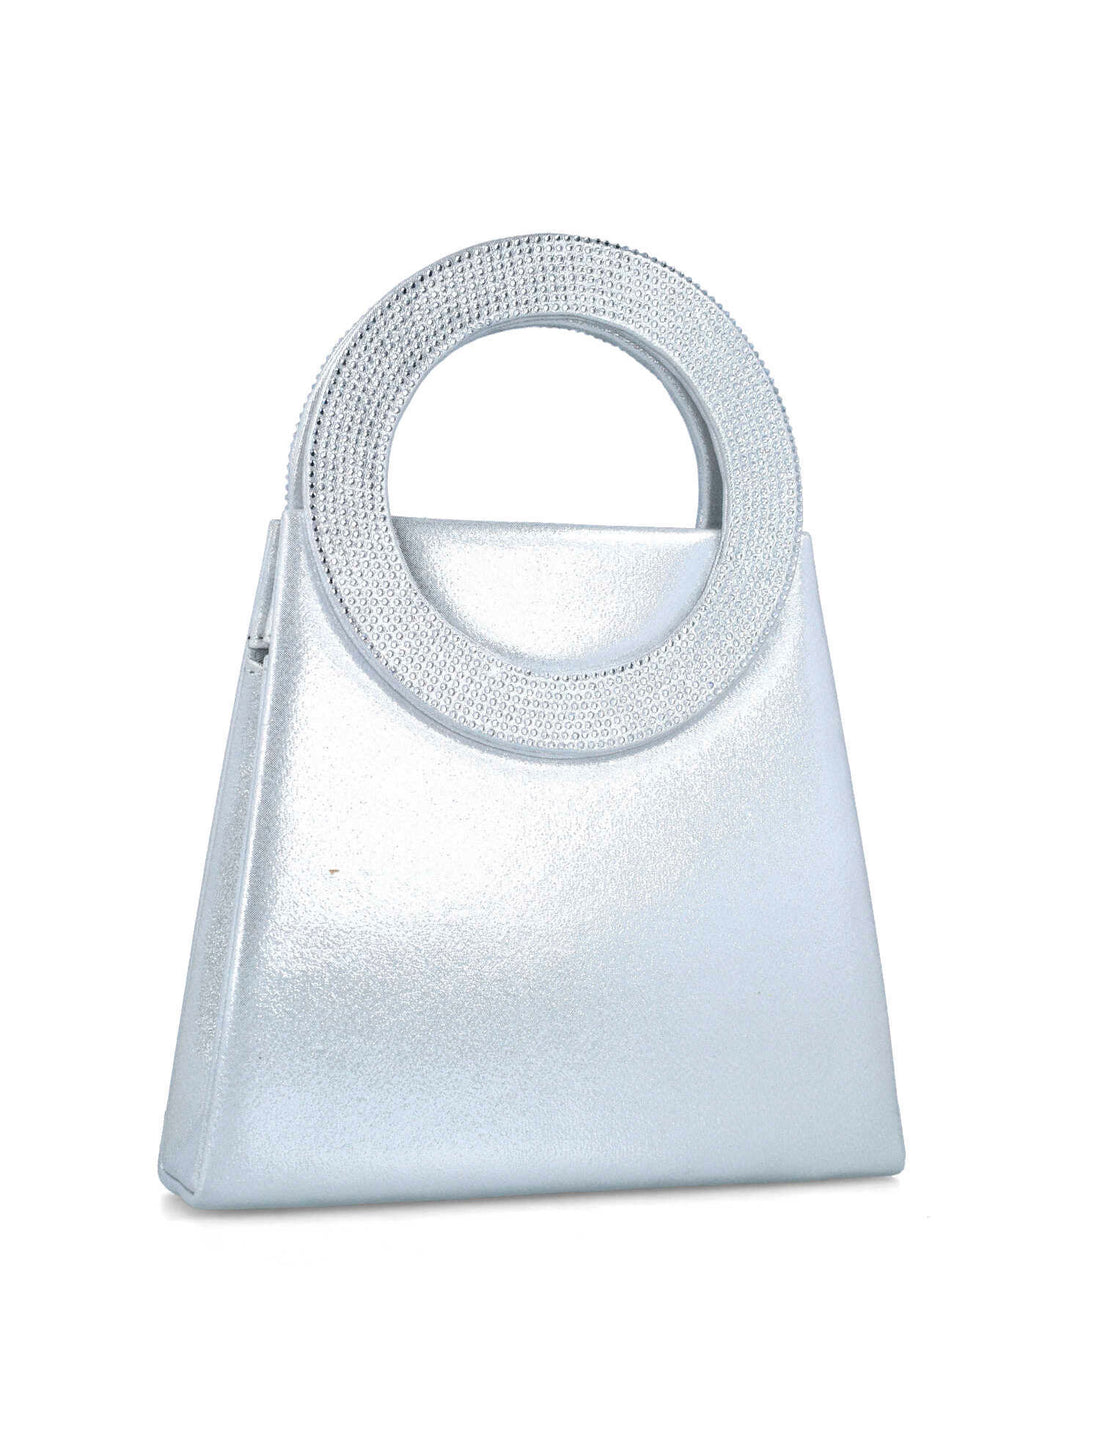 Silver Handbag With Embellished Hand Strap_85508_09_02